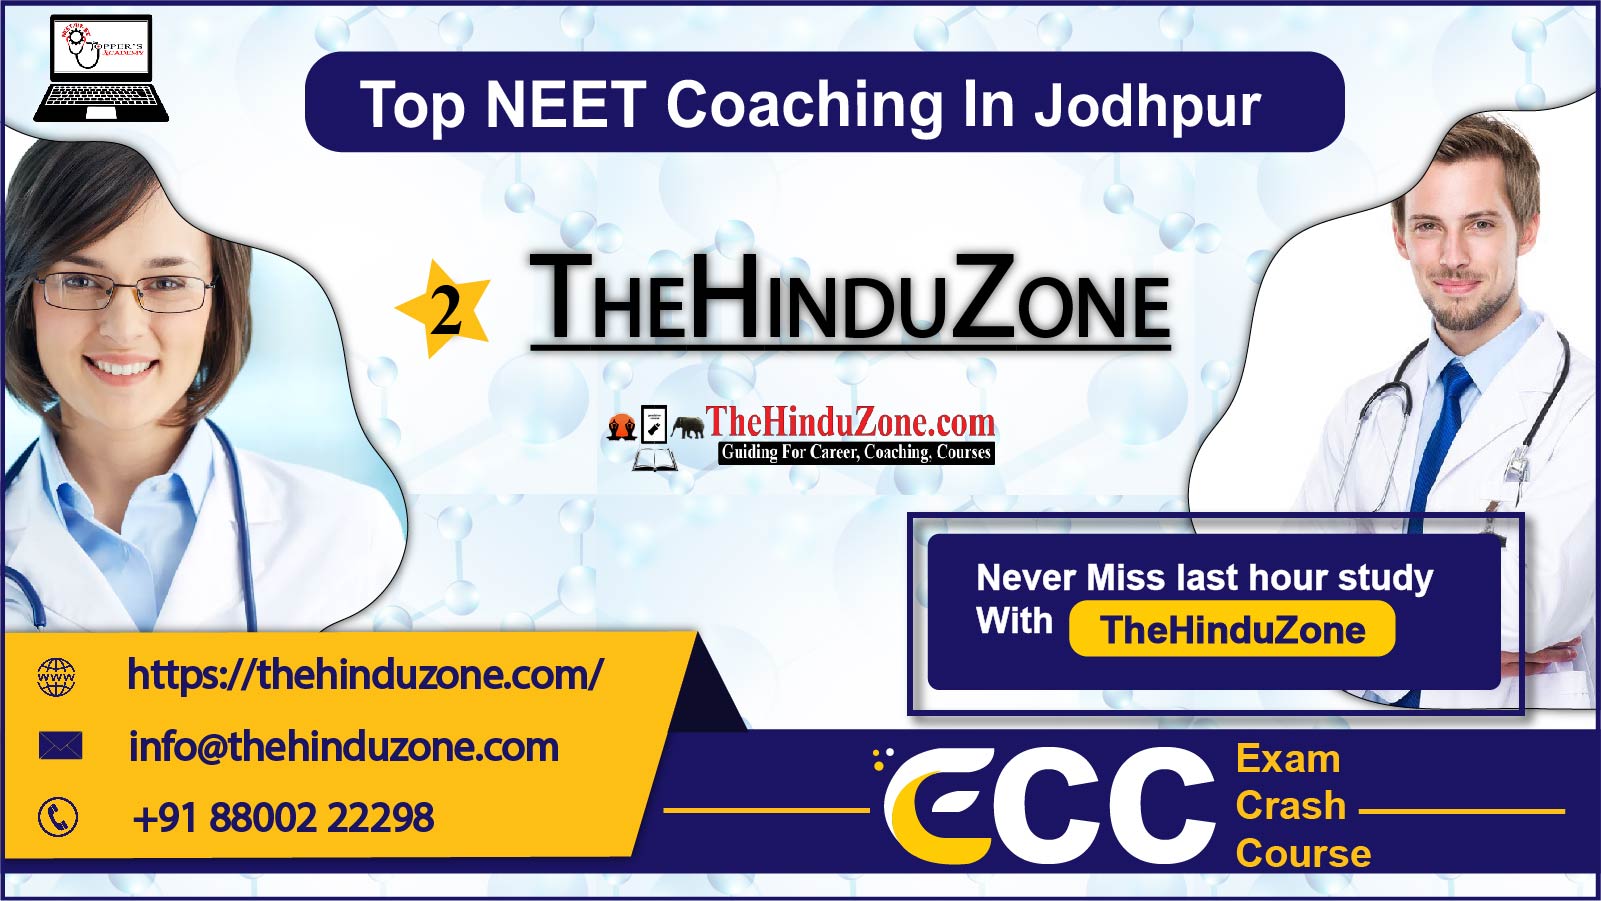 The Hinduzone NEET Coaching in Jodhpur